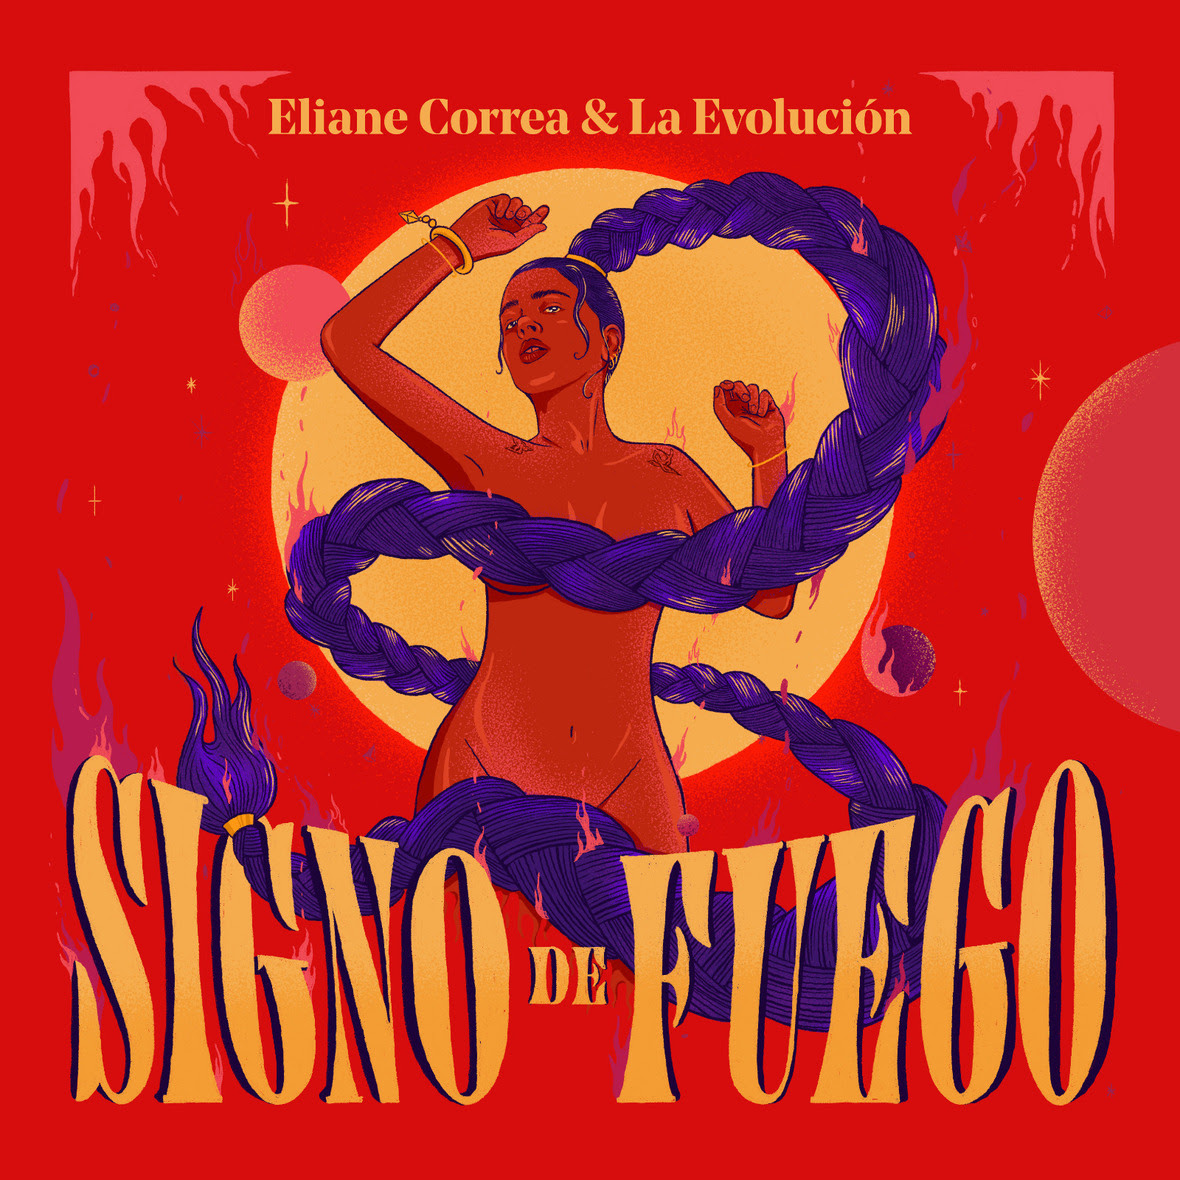 1. Signo De Fuego album cover  mid res 